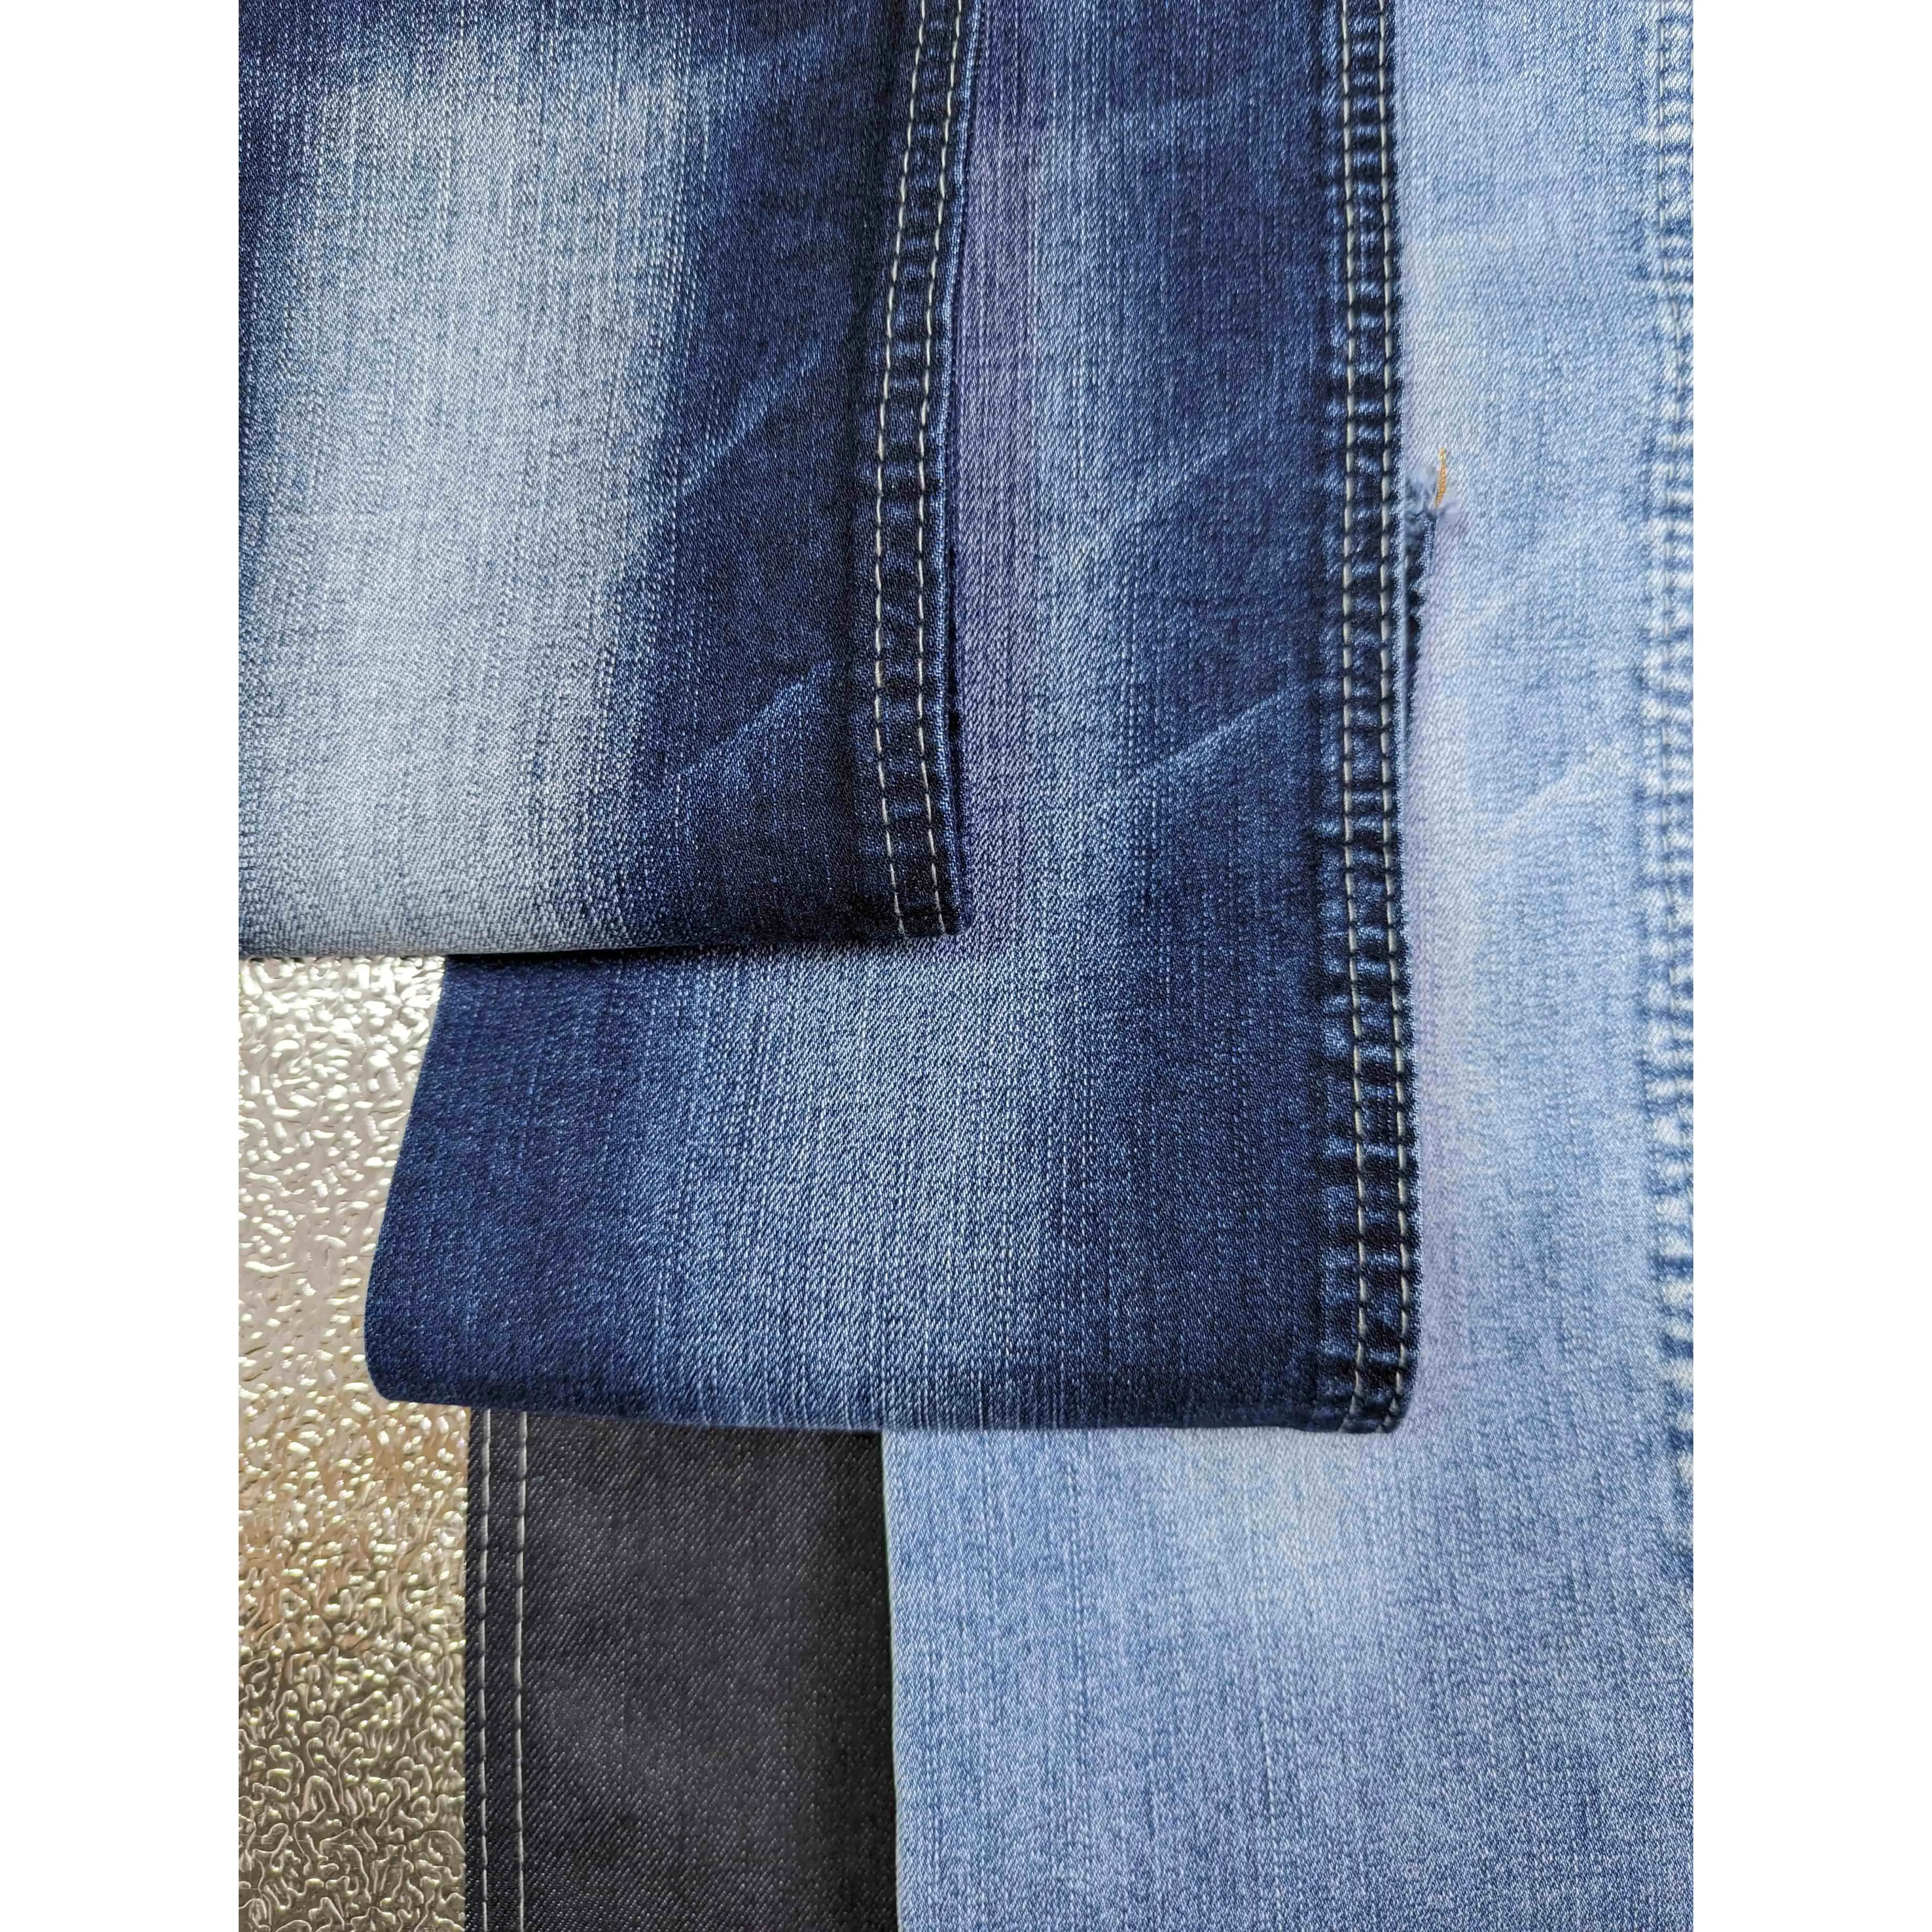 großhandel fabrik lieferung 10,6 oz leichte baumwolle polyester slub blau denim stoff für einzug